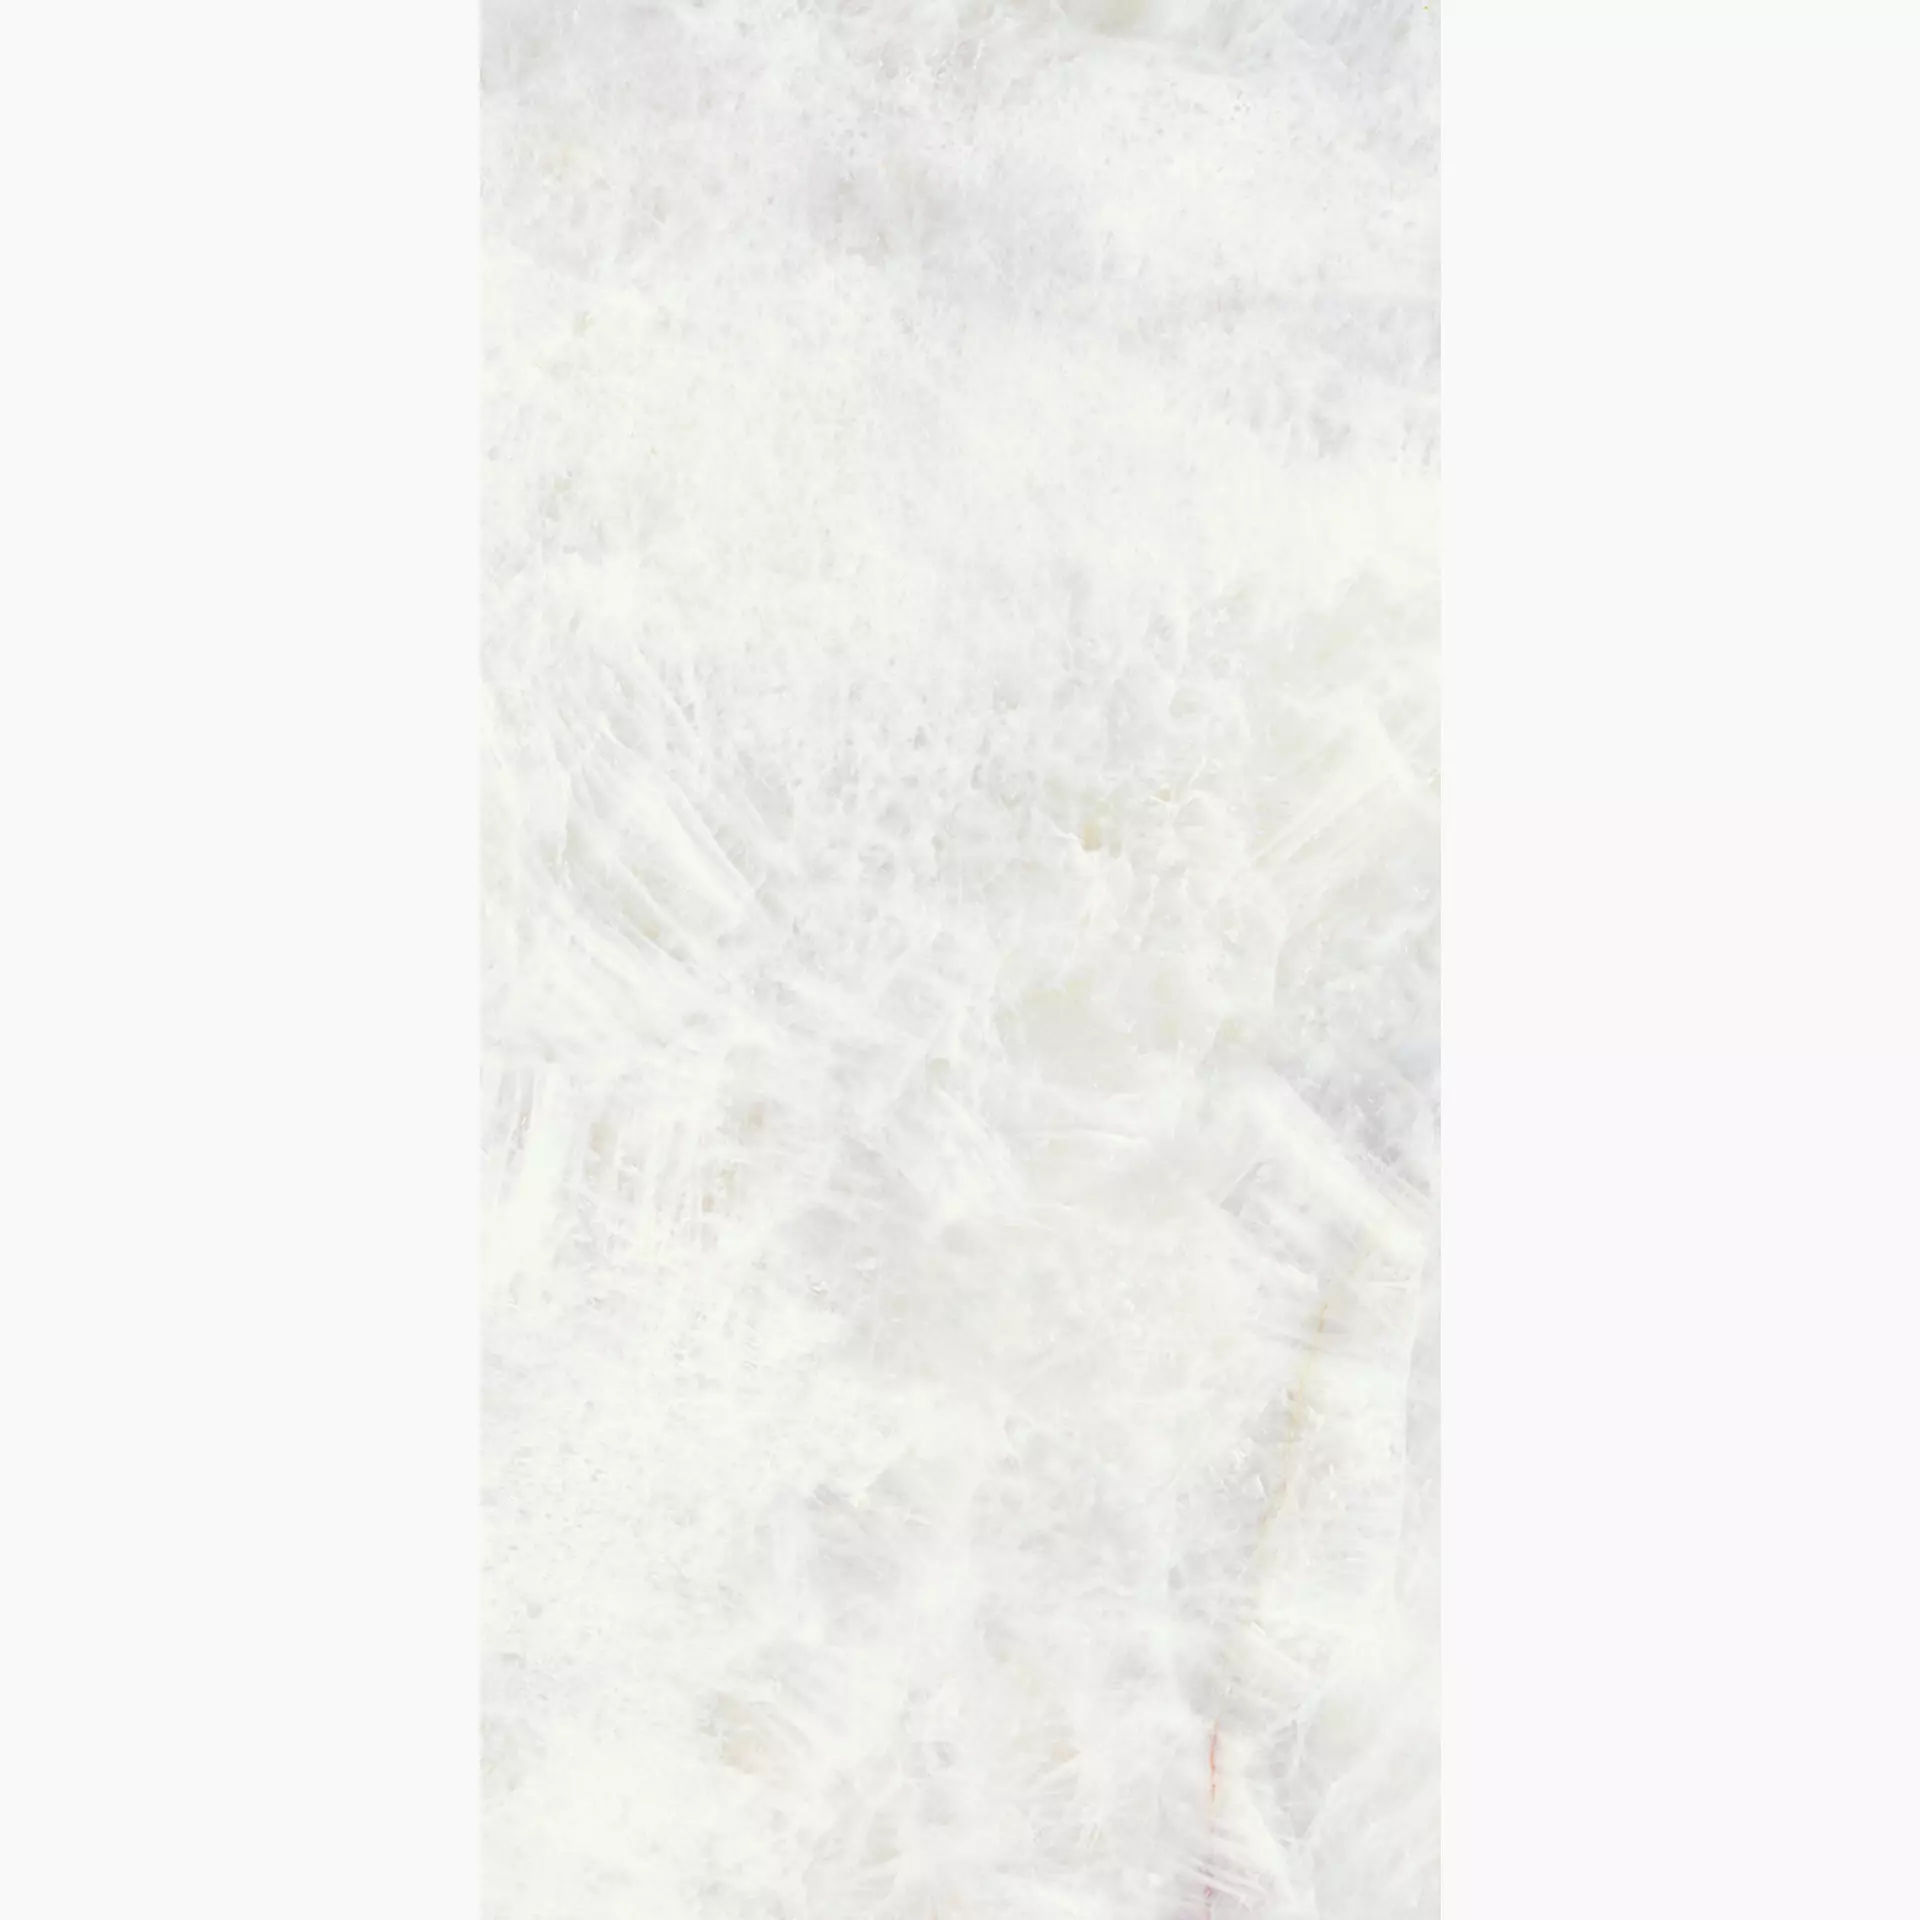 Emilceramica Tele Di Marmo Precious Crystal White Full Lappato ELV3 90x180cm rectified 10mm